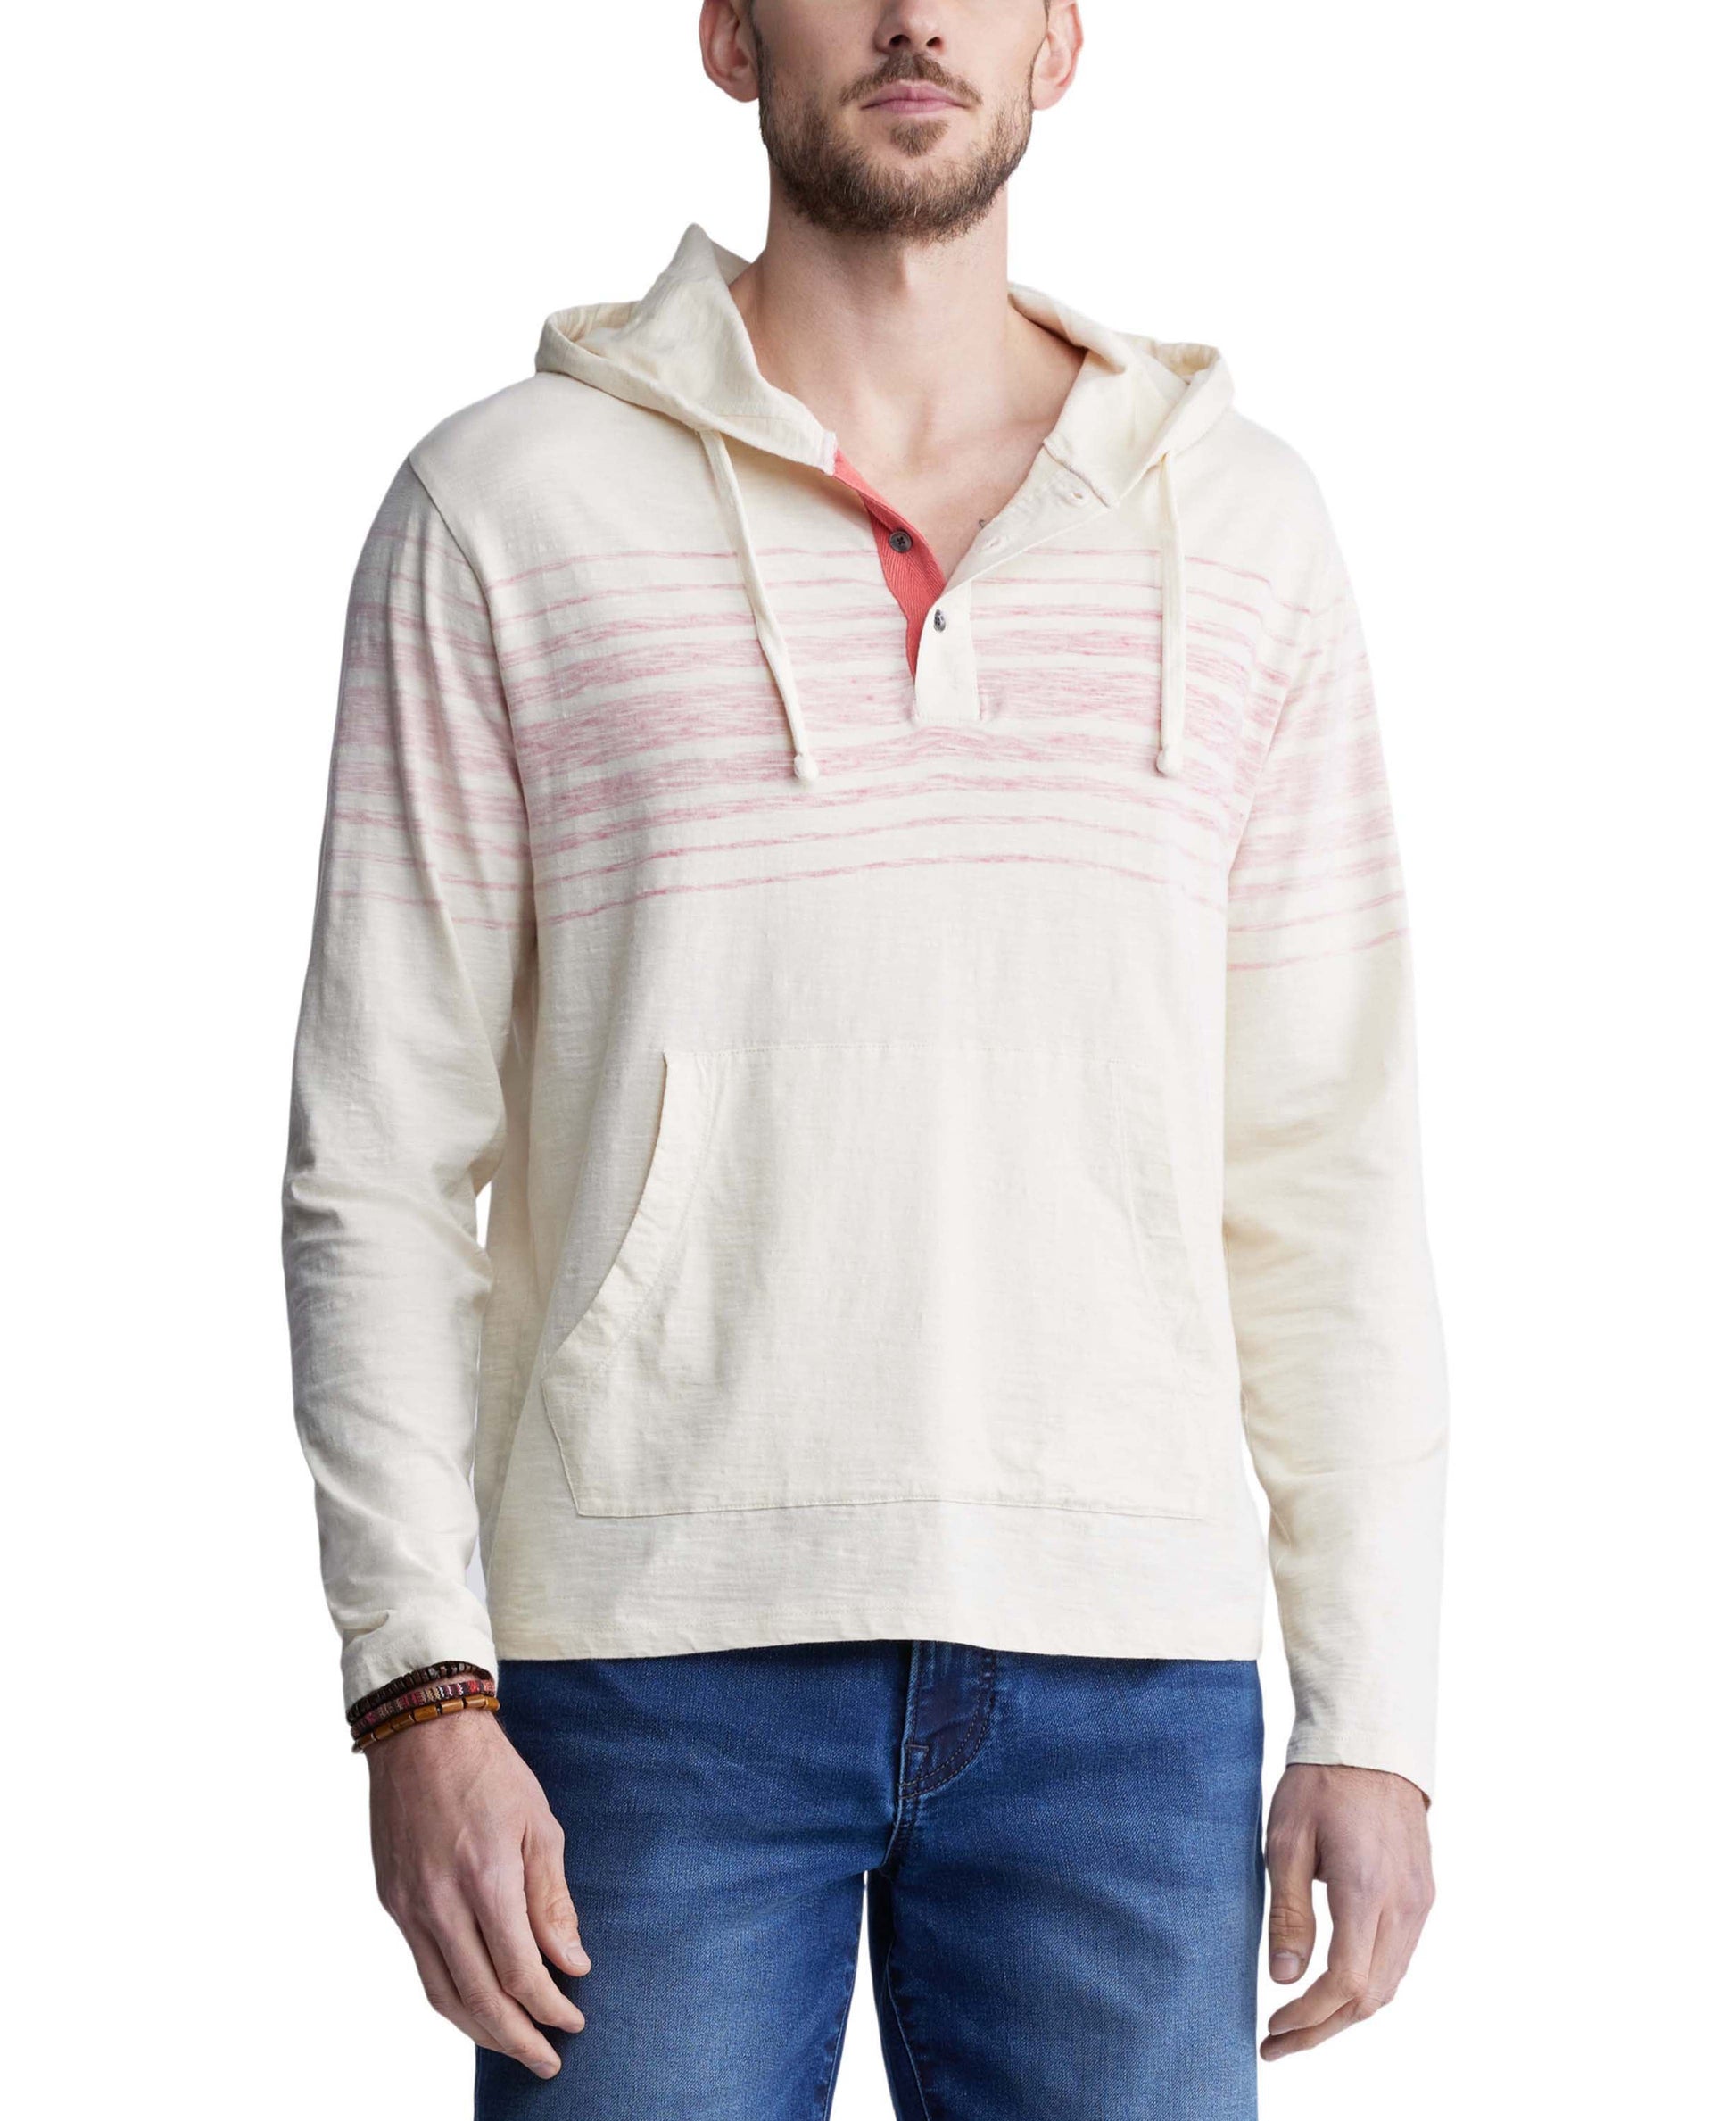 Metersbonwe Hoodies Men Spring New Multicolor Comfort Sweater Male